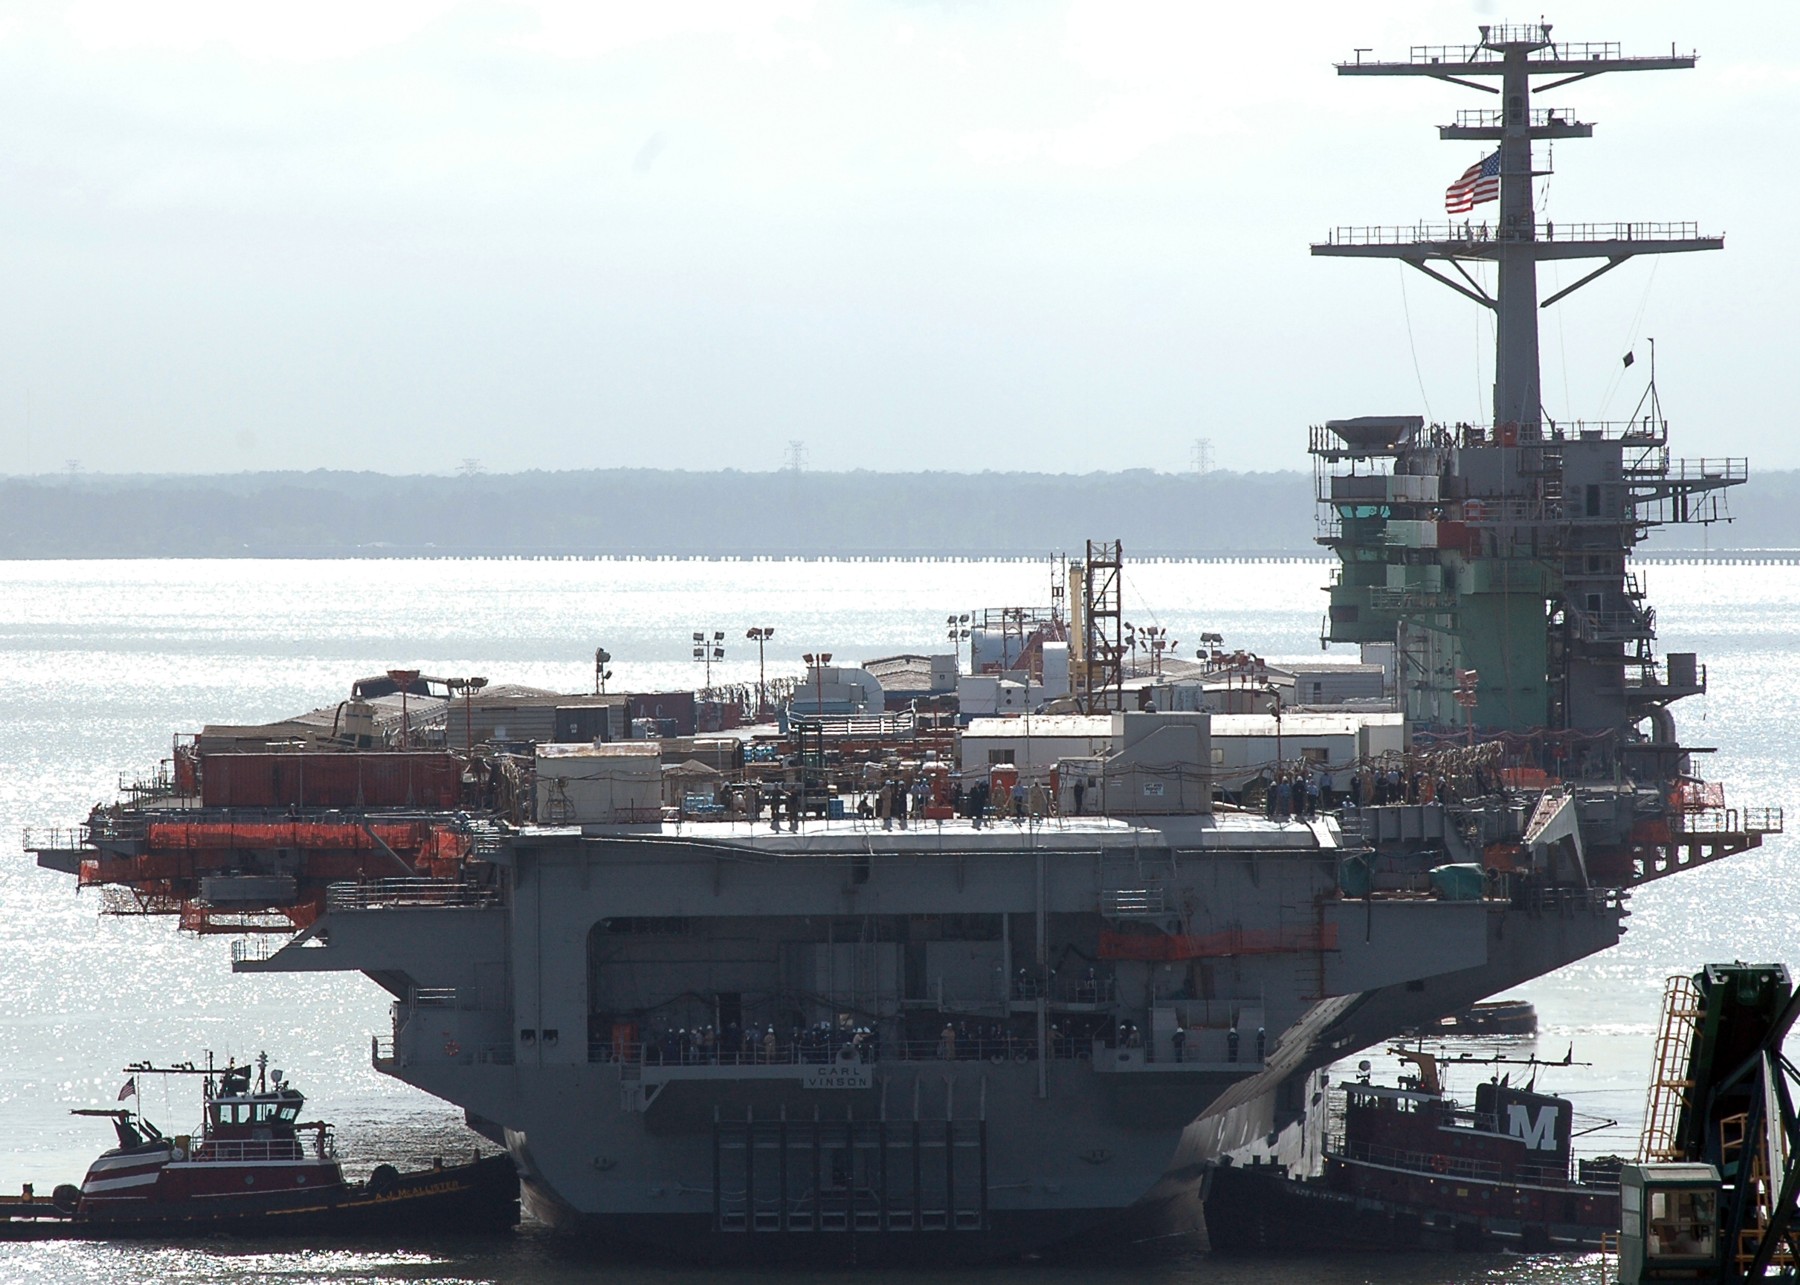 cvn-70 uss carl vinson nimitz class aircraft carrier us navy refueling complex overhaul newport news 119